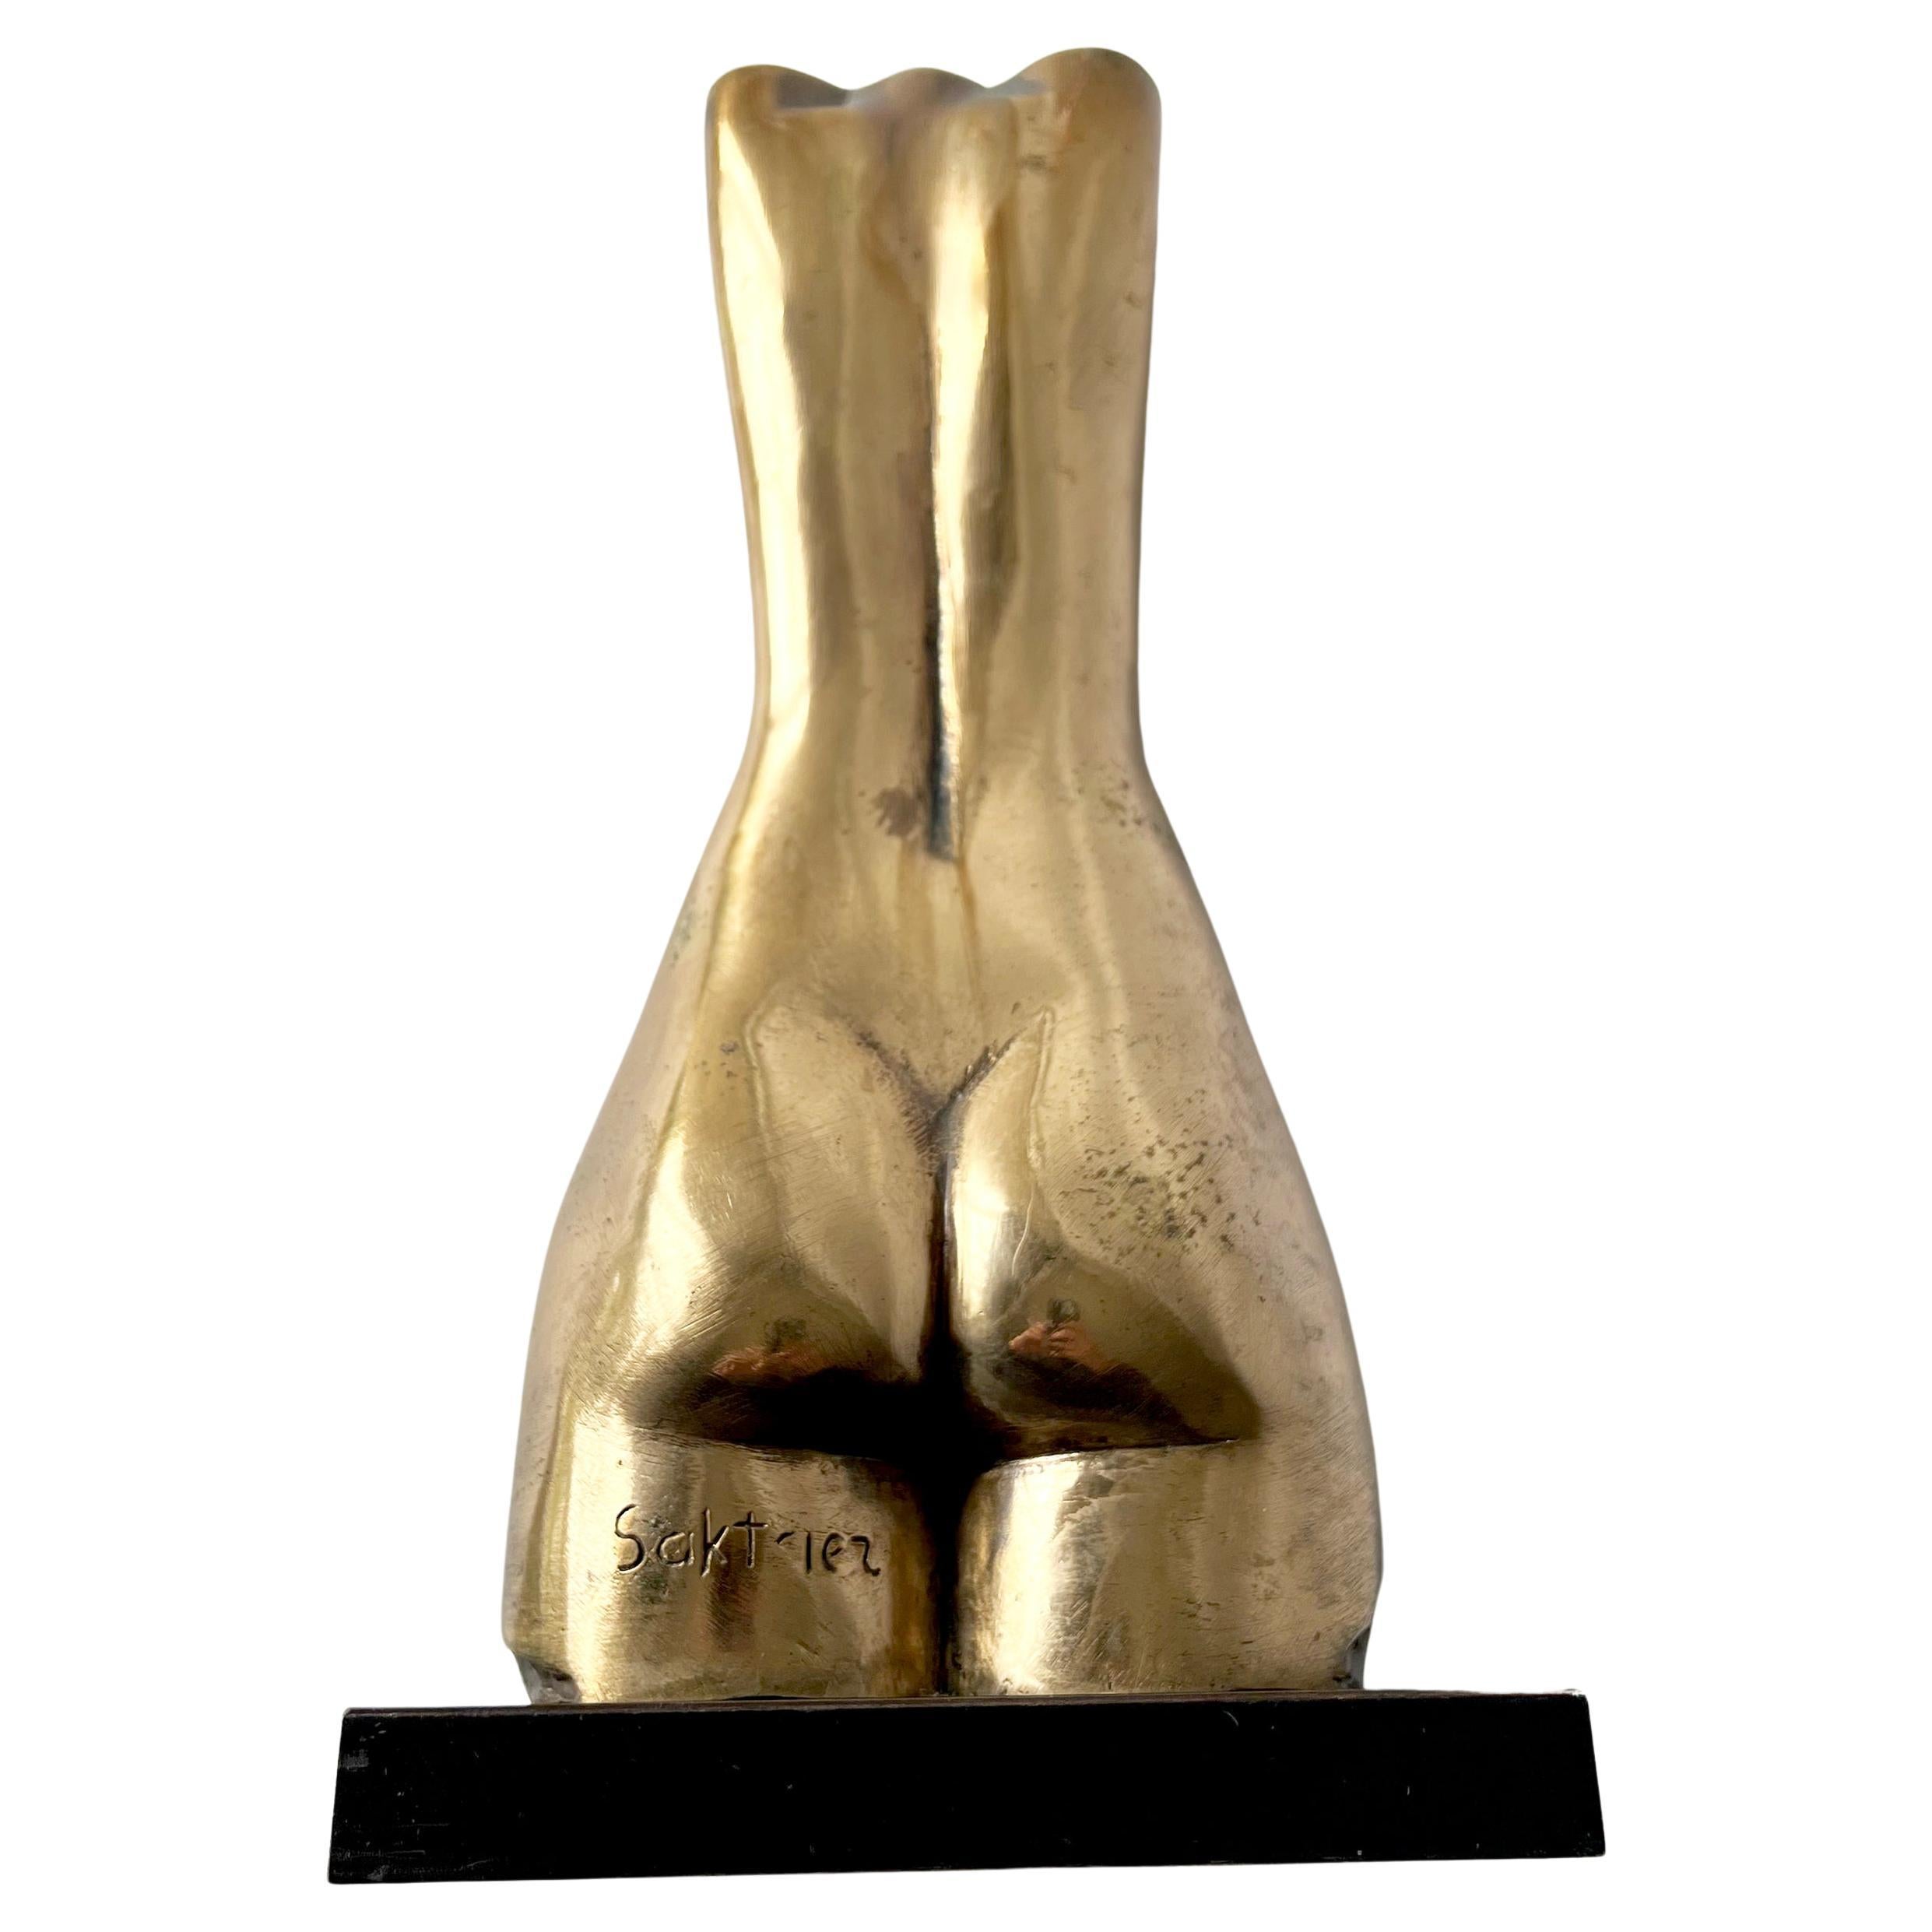 Torse de femme en bronze du sculpteur russe israélien Baruch Saktsier.  La sculpture mesure 14